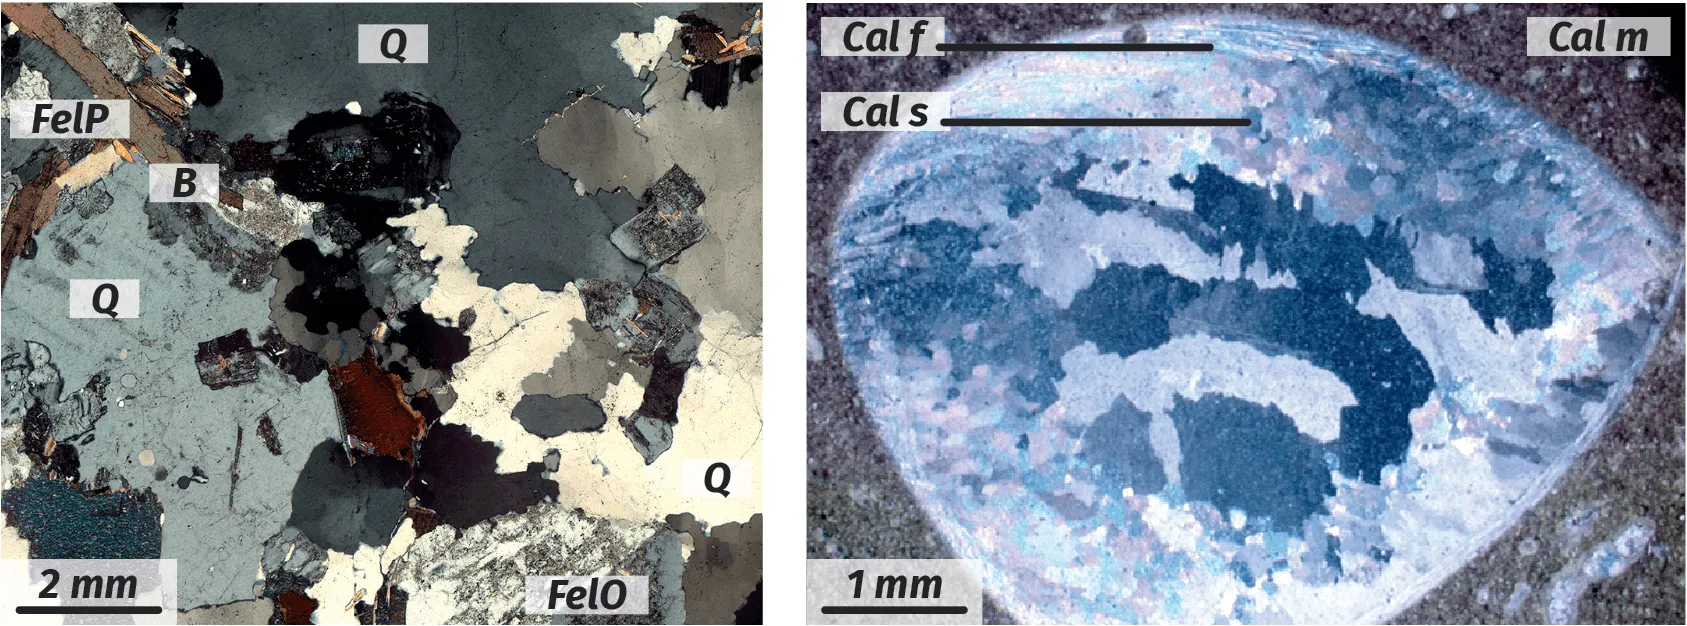 Observation au microscope polarisant d'un granite et d'un calcaire coquillier